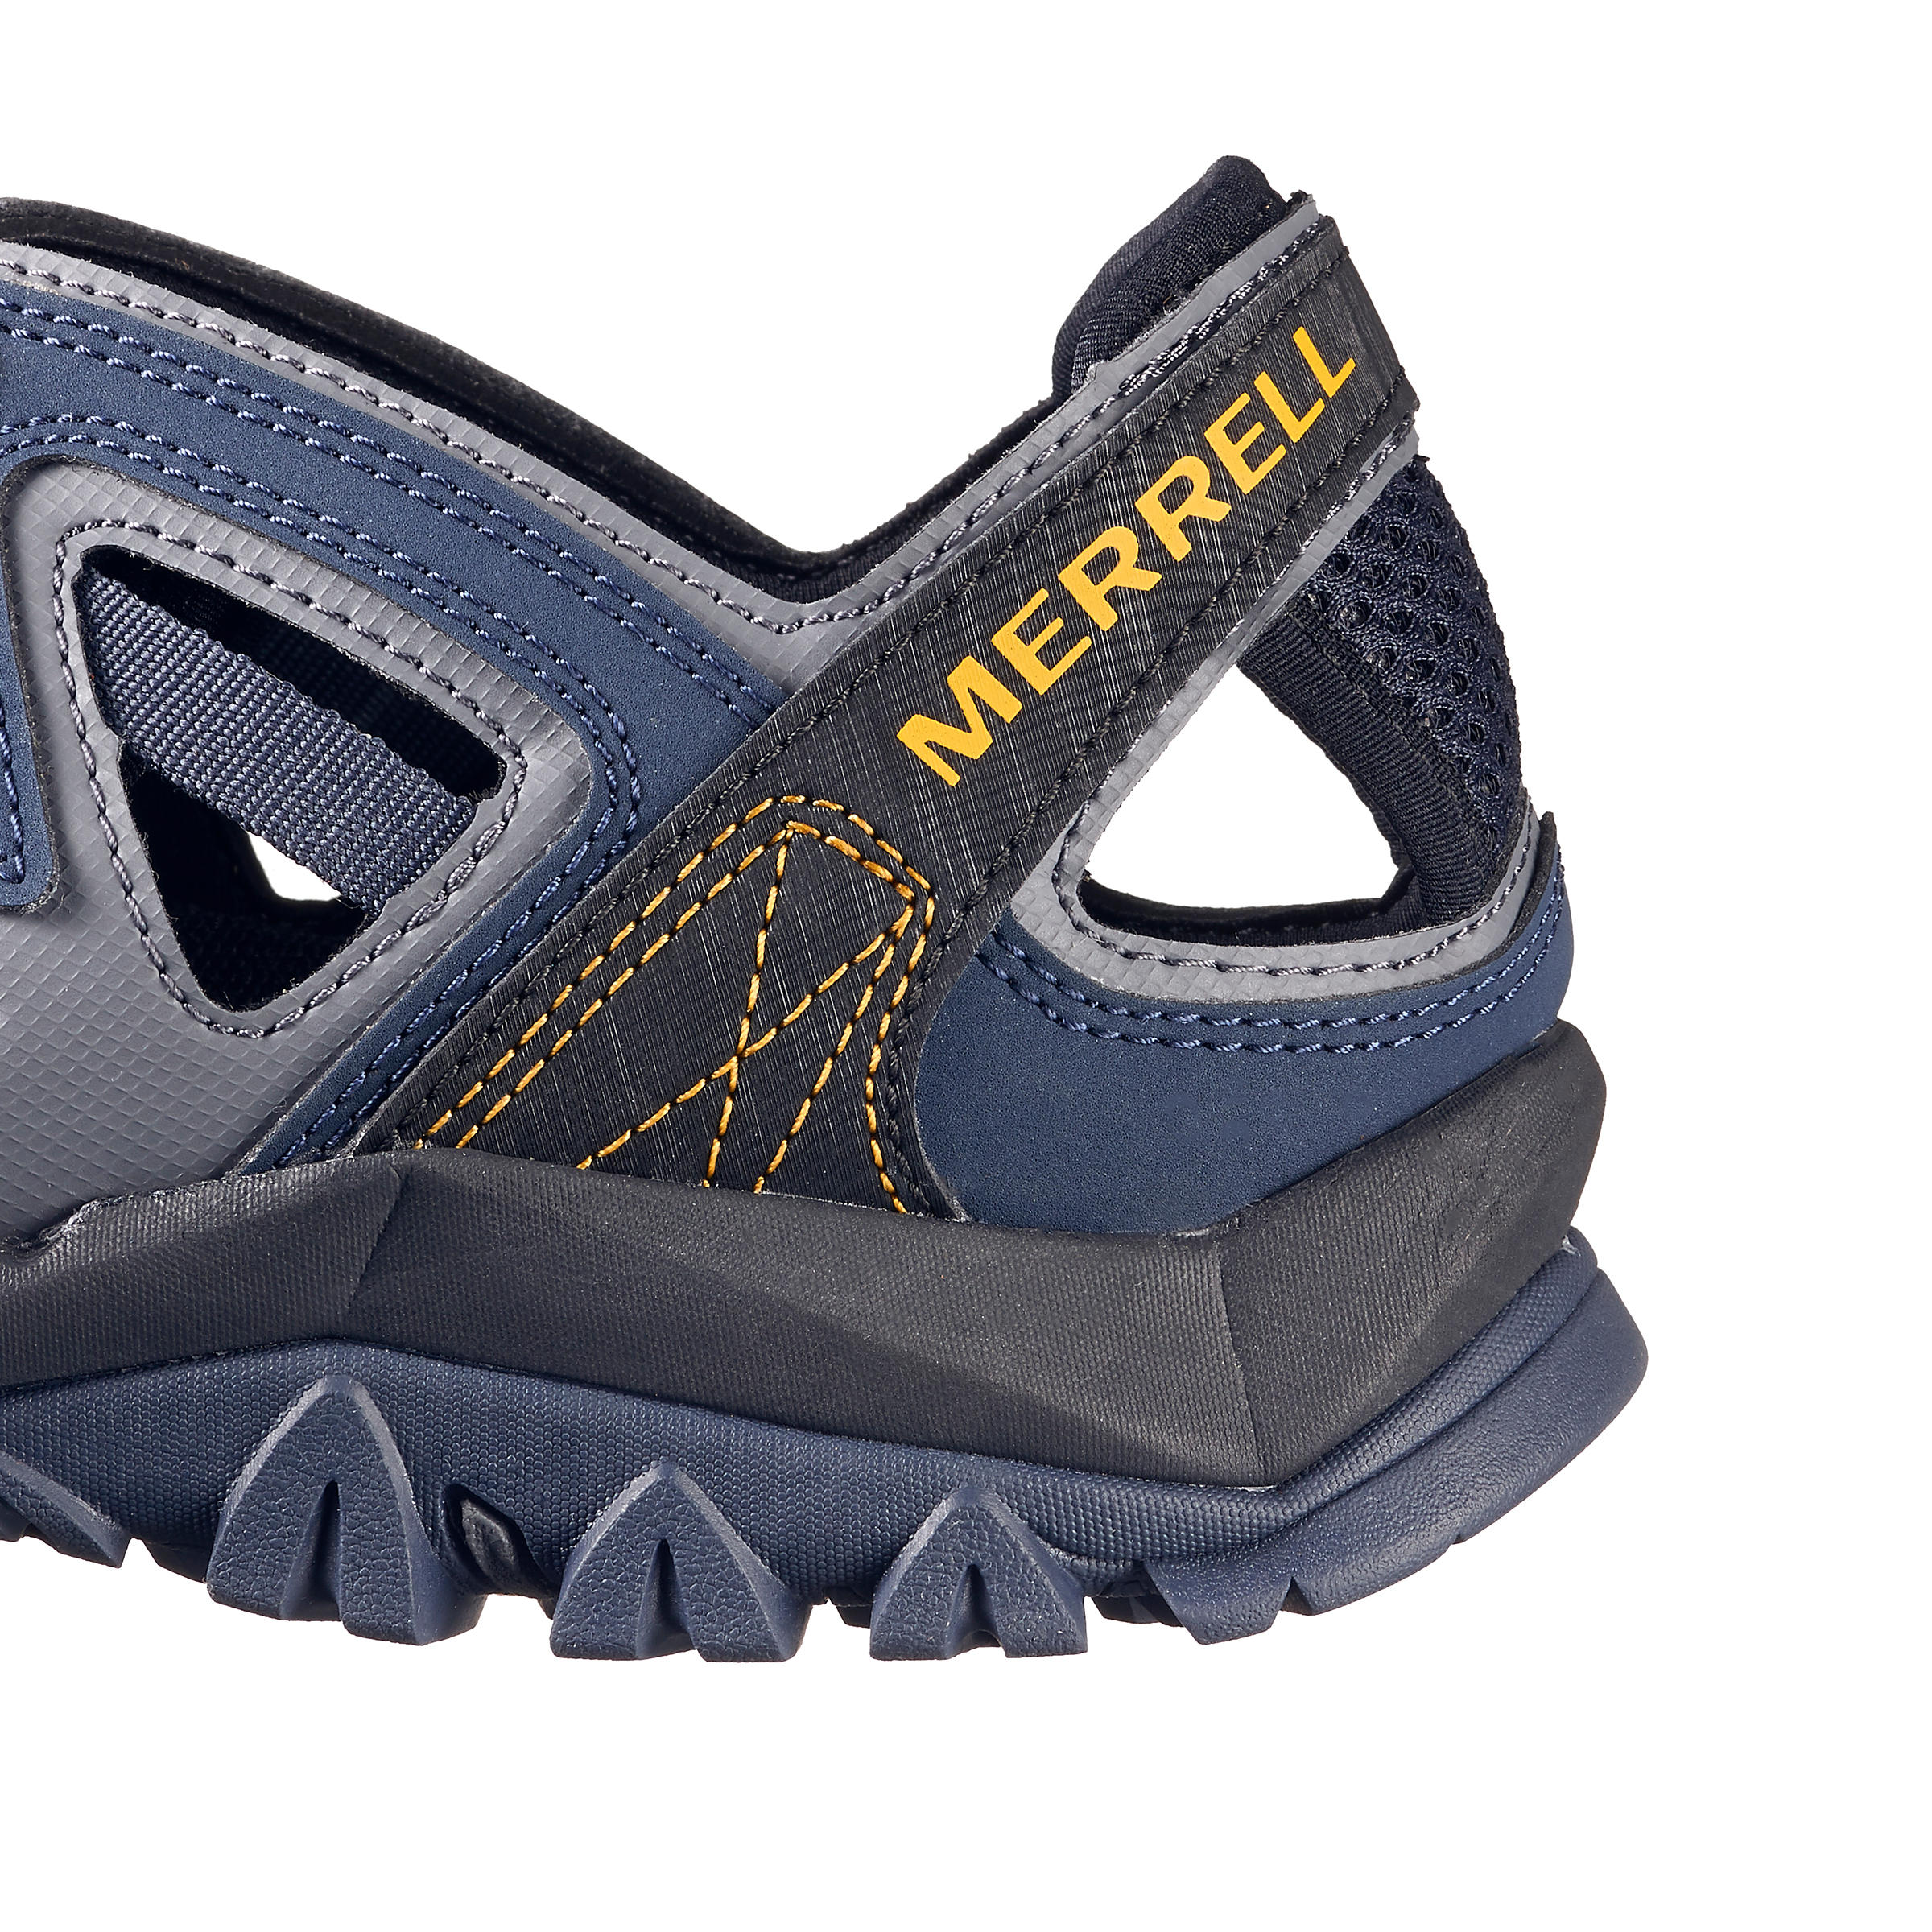 Men's walking sandals - Merrell Tetrex Crest - Blue 3/5